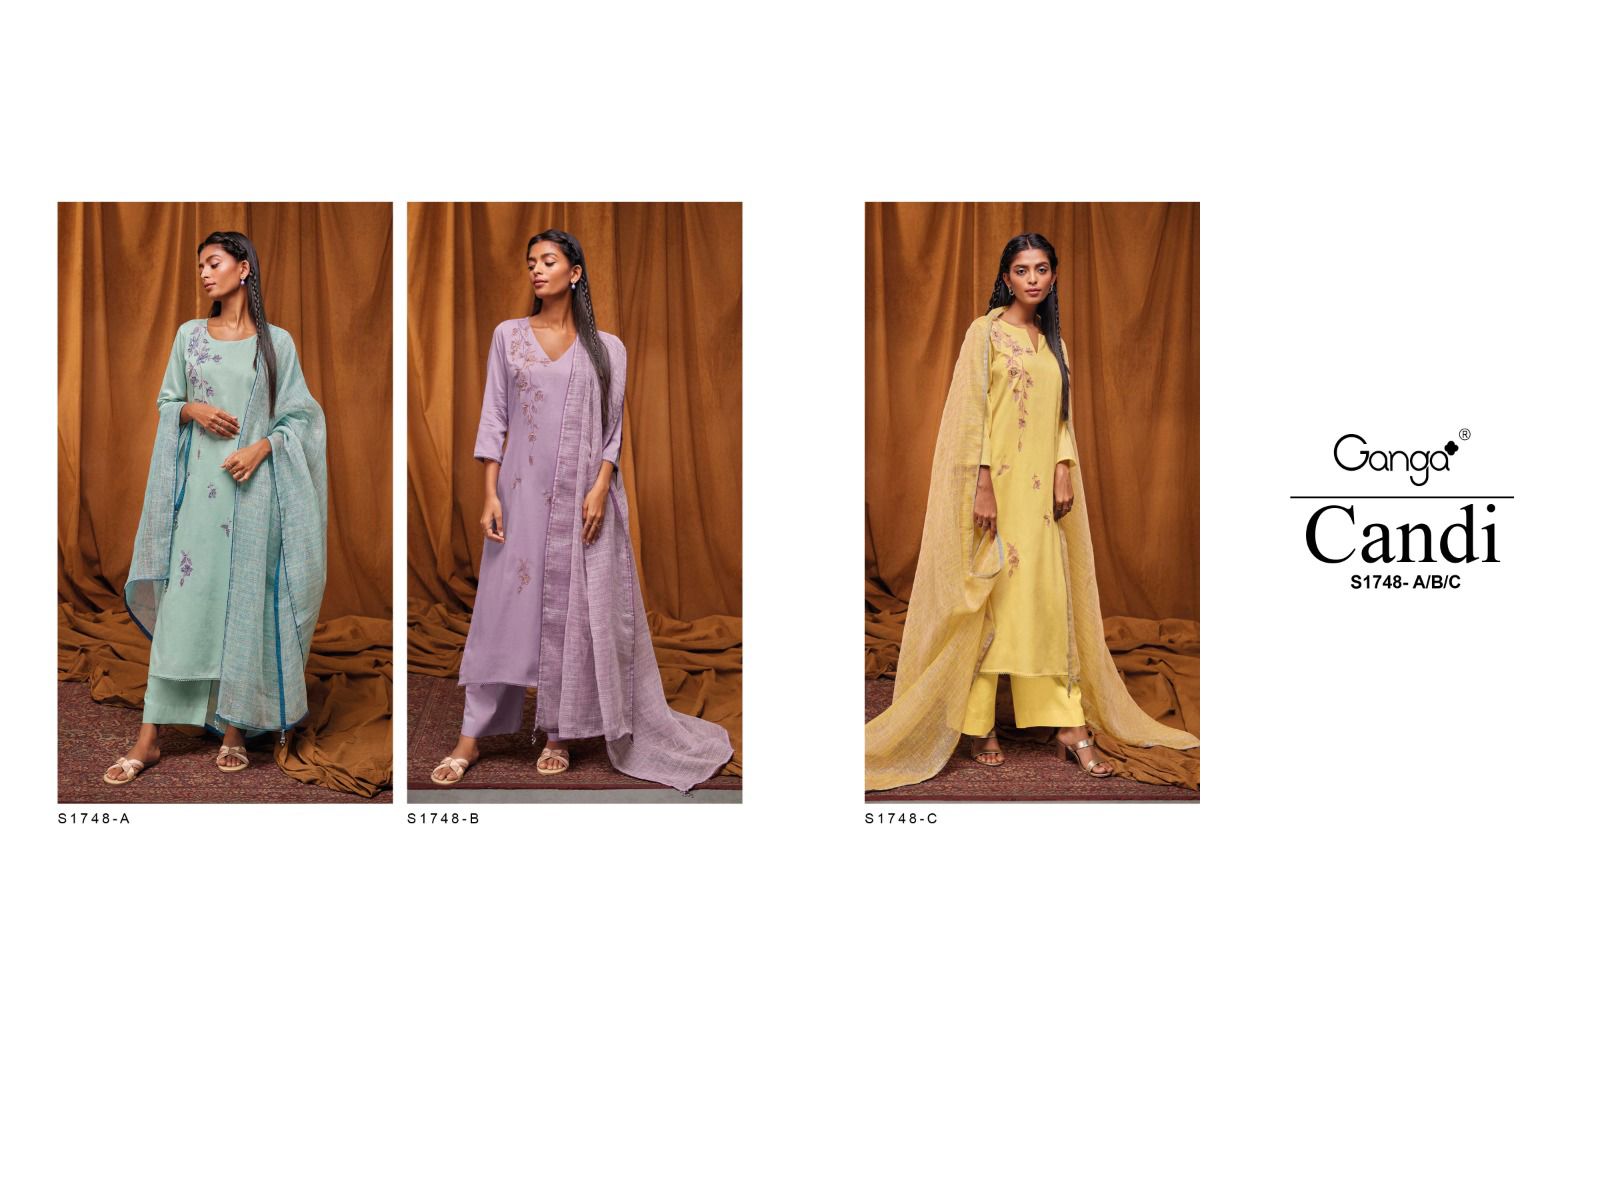 Ganga Candi 1748 Colors